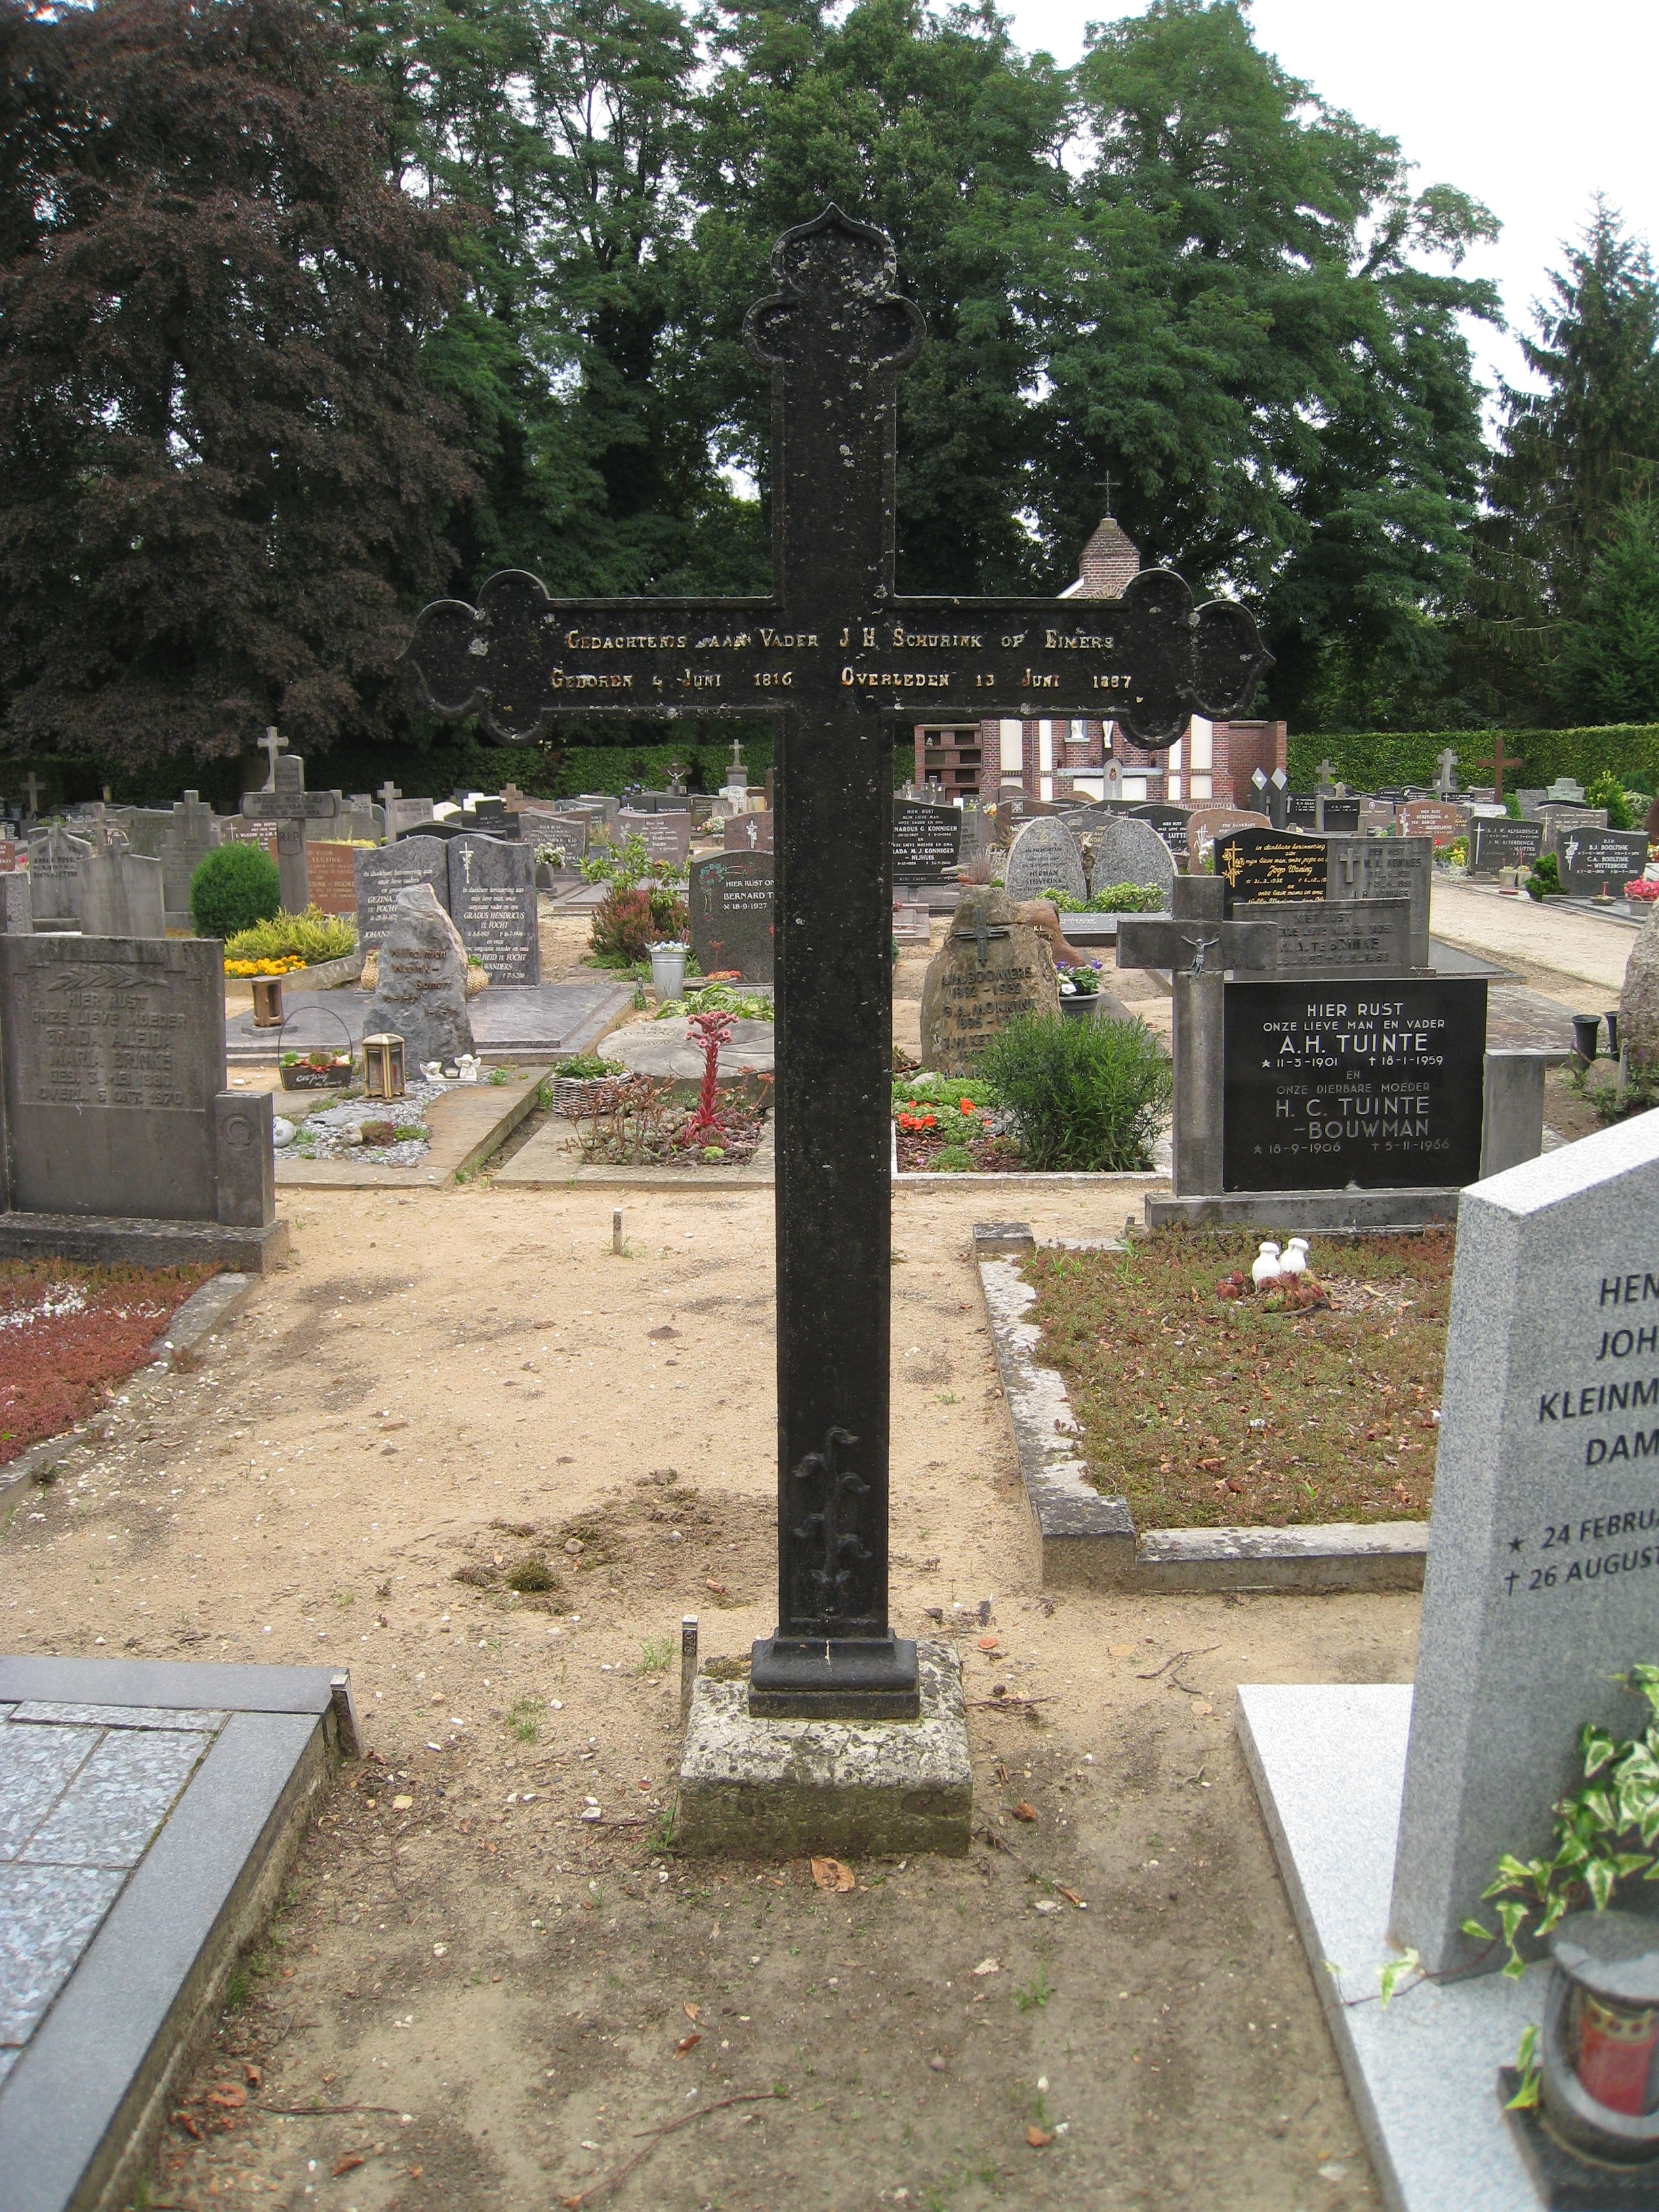 Het in 2013 verdwenen gietijzeren kruis op het graf van J.H. Schurink op Eimers.